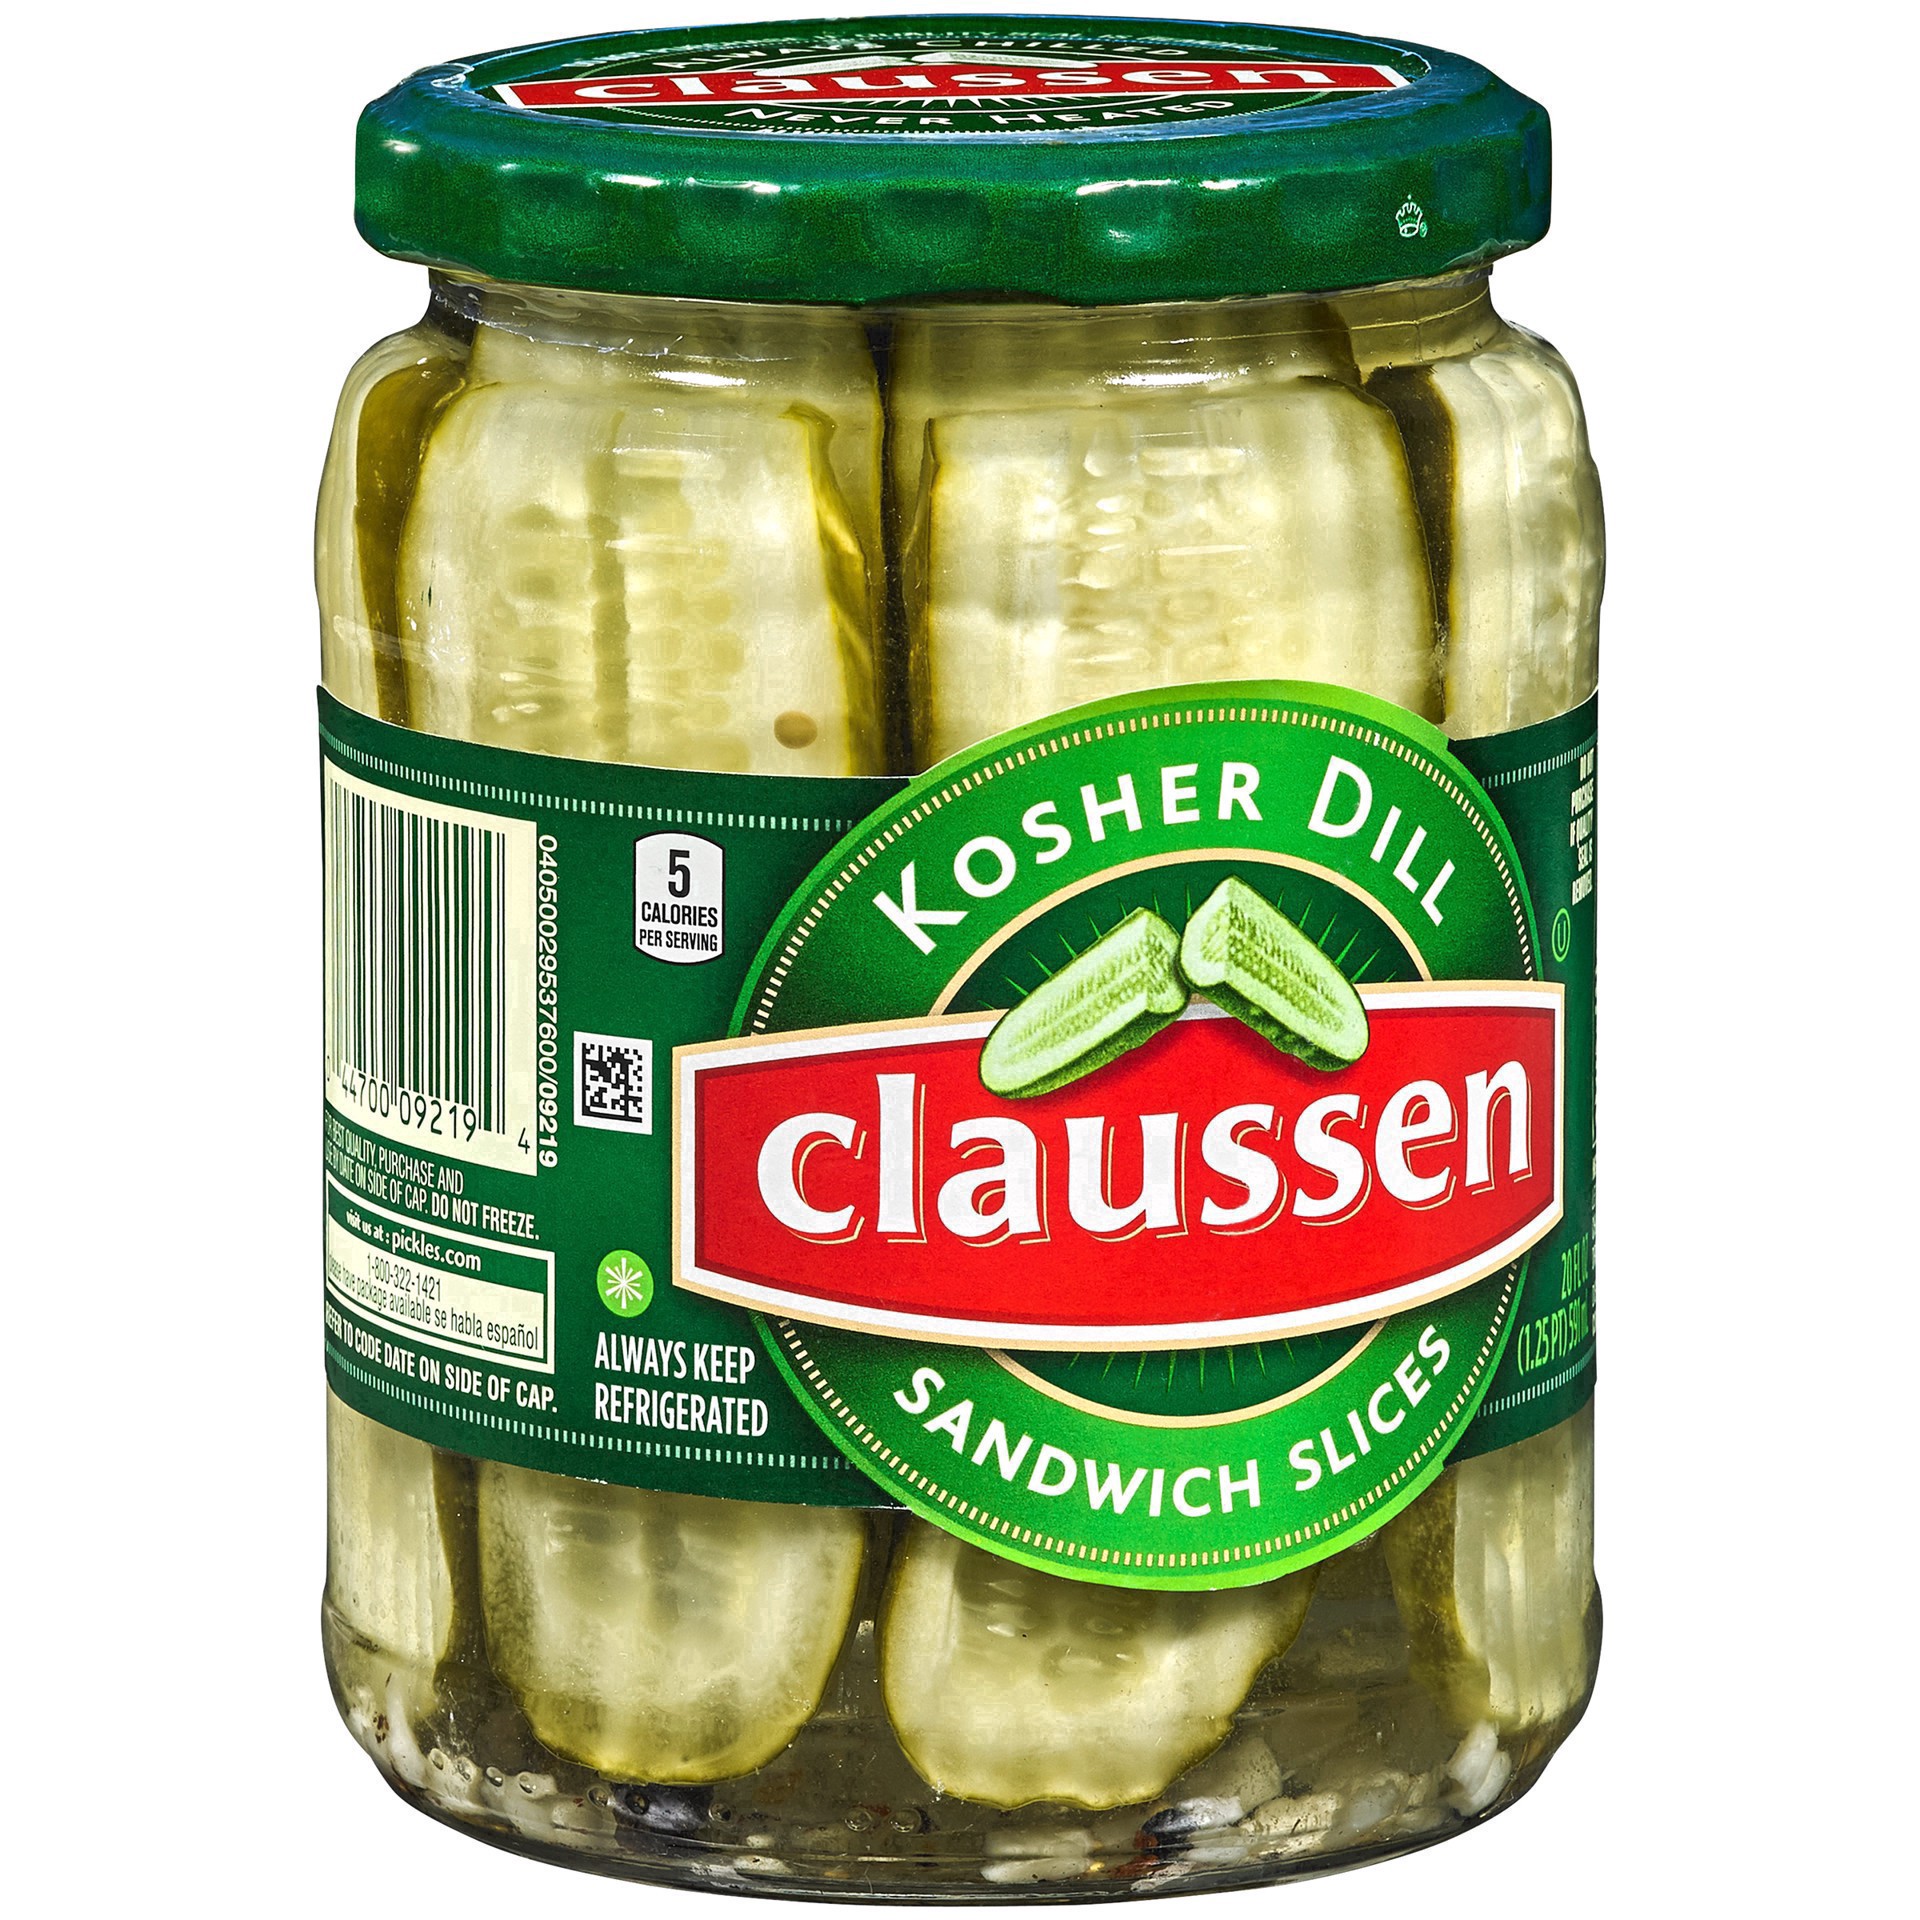 slide 106 of 144, Claussen Kosher Dill Pickle Sandwich Slices, 20 fl. oz. Jar, 20 fl oz